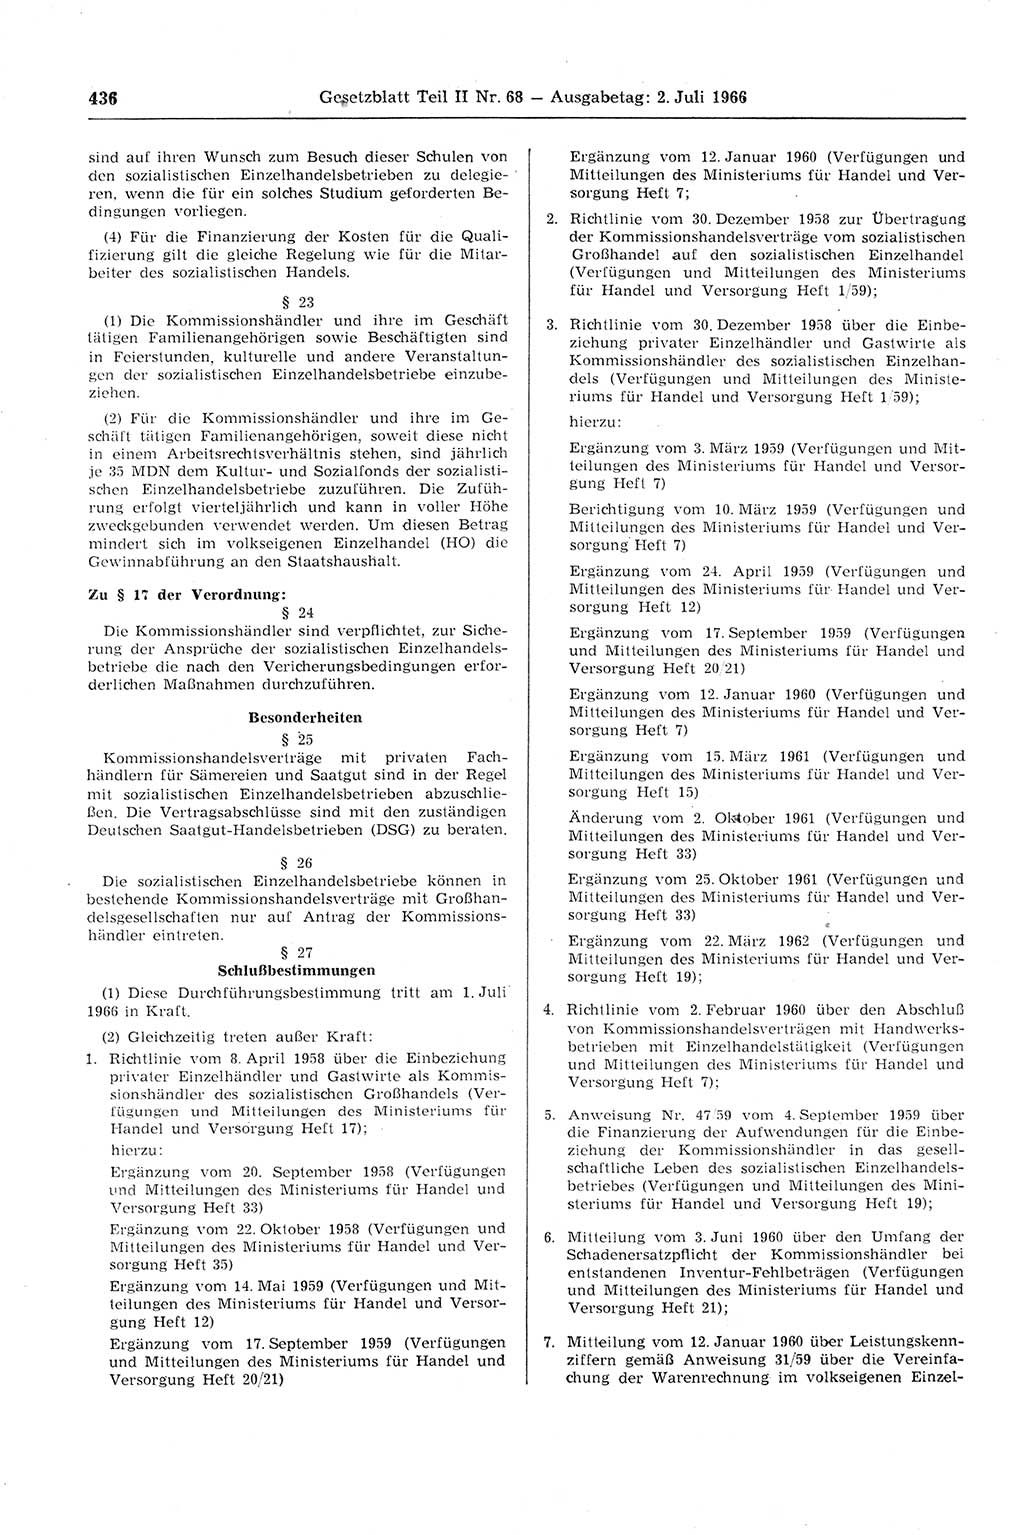 Gesetzblatt (GBl.) der Deutschen Demokratischen Republik (DDR) Teil ⅠⅠ 1966, Seite 436 (GBl. DDR ⅠⅠ 1966, S. 436)